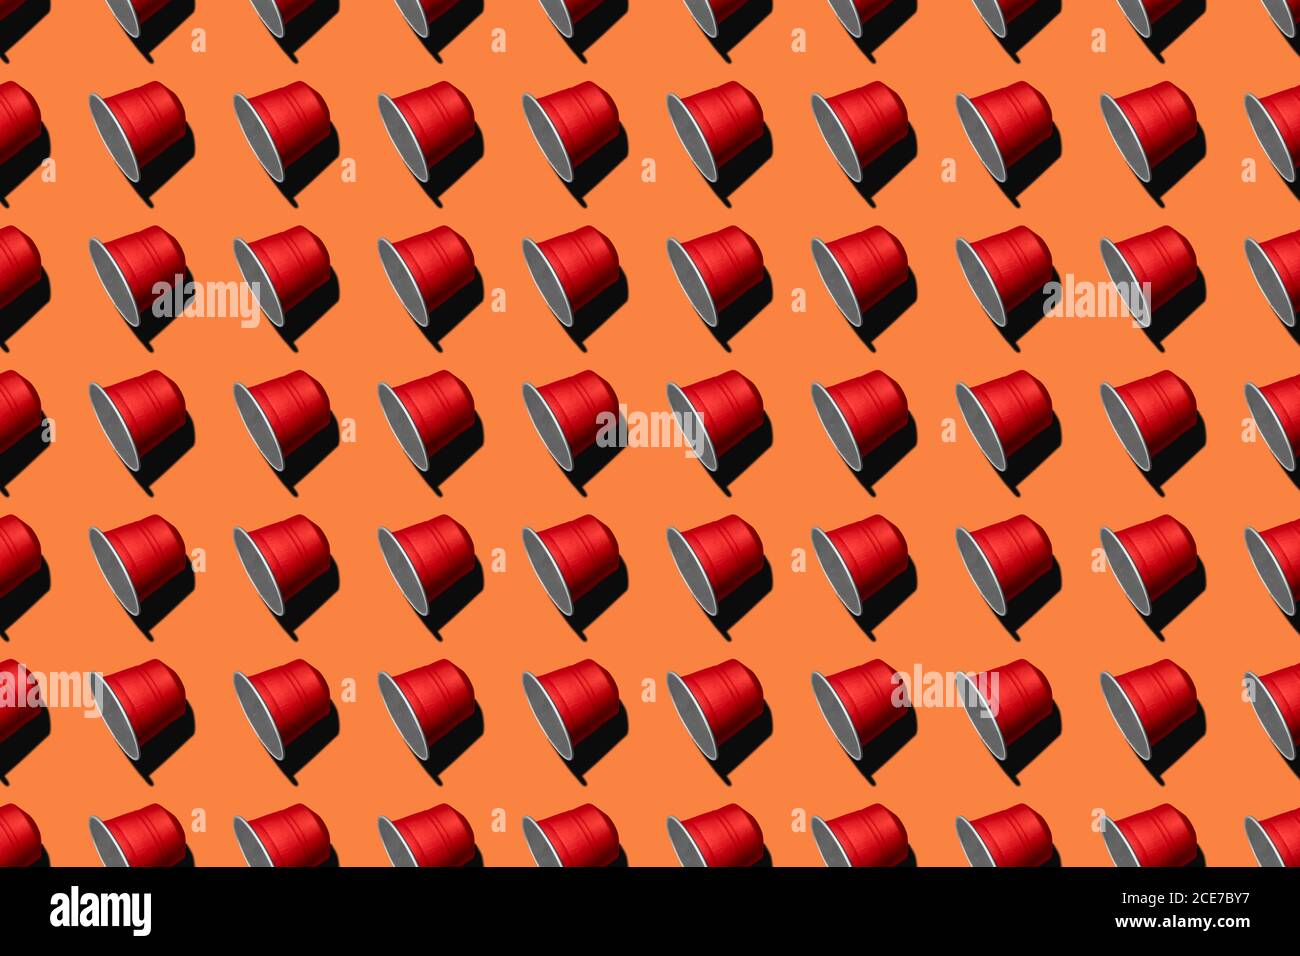 Draufsicht auf rote Kaffeepads in geraden Reihen Als nahtloses Muster auf orangefarbenem Hintergrund Stockfoto